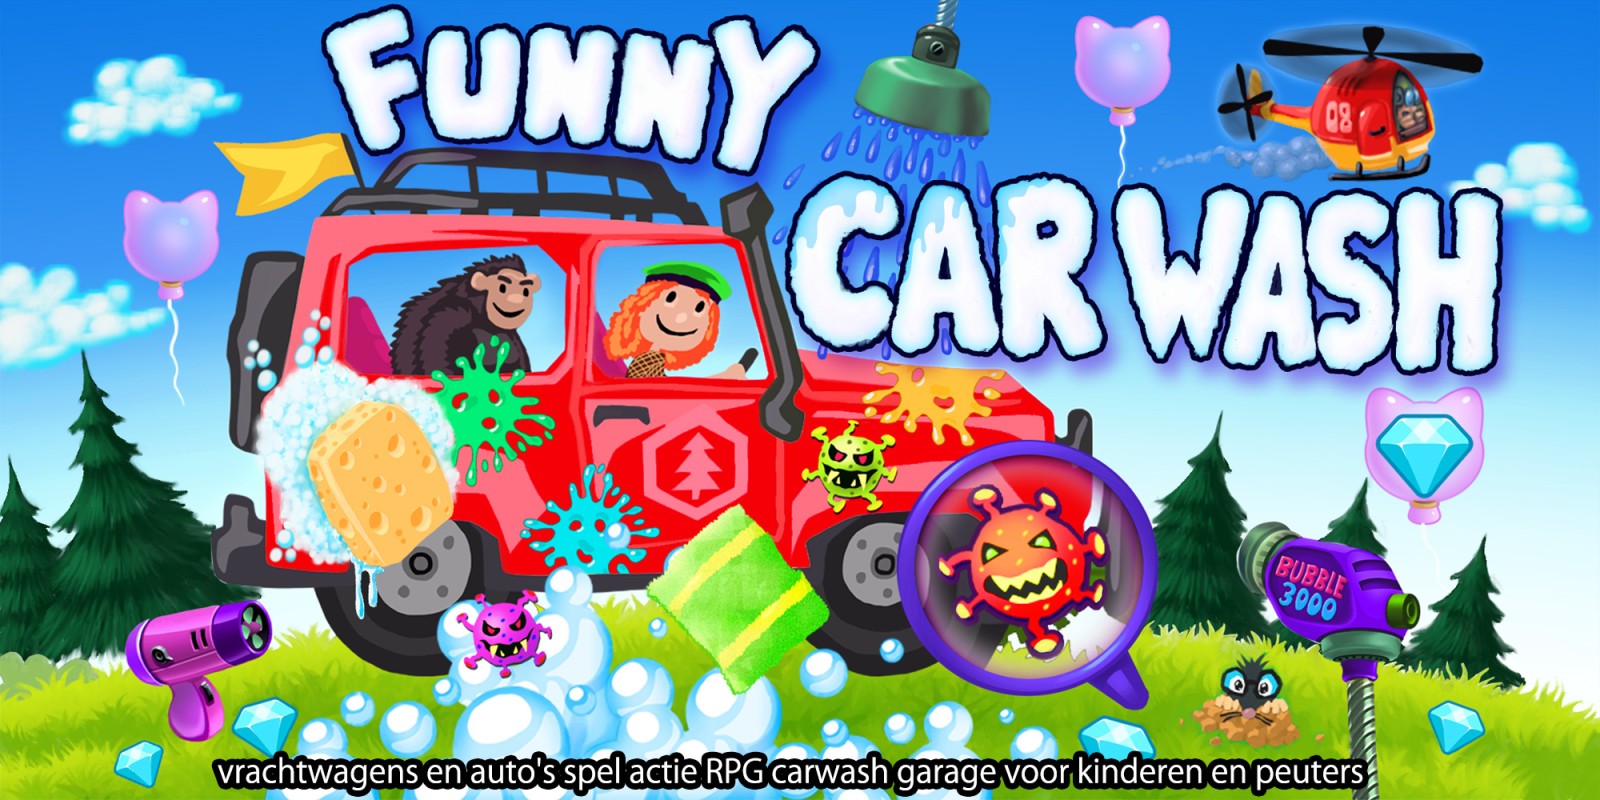 Funny Car Wash - vrachtwagens en auto's spel actie RPG carwash garage voor kinderen en peuters